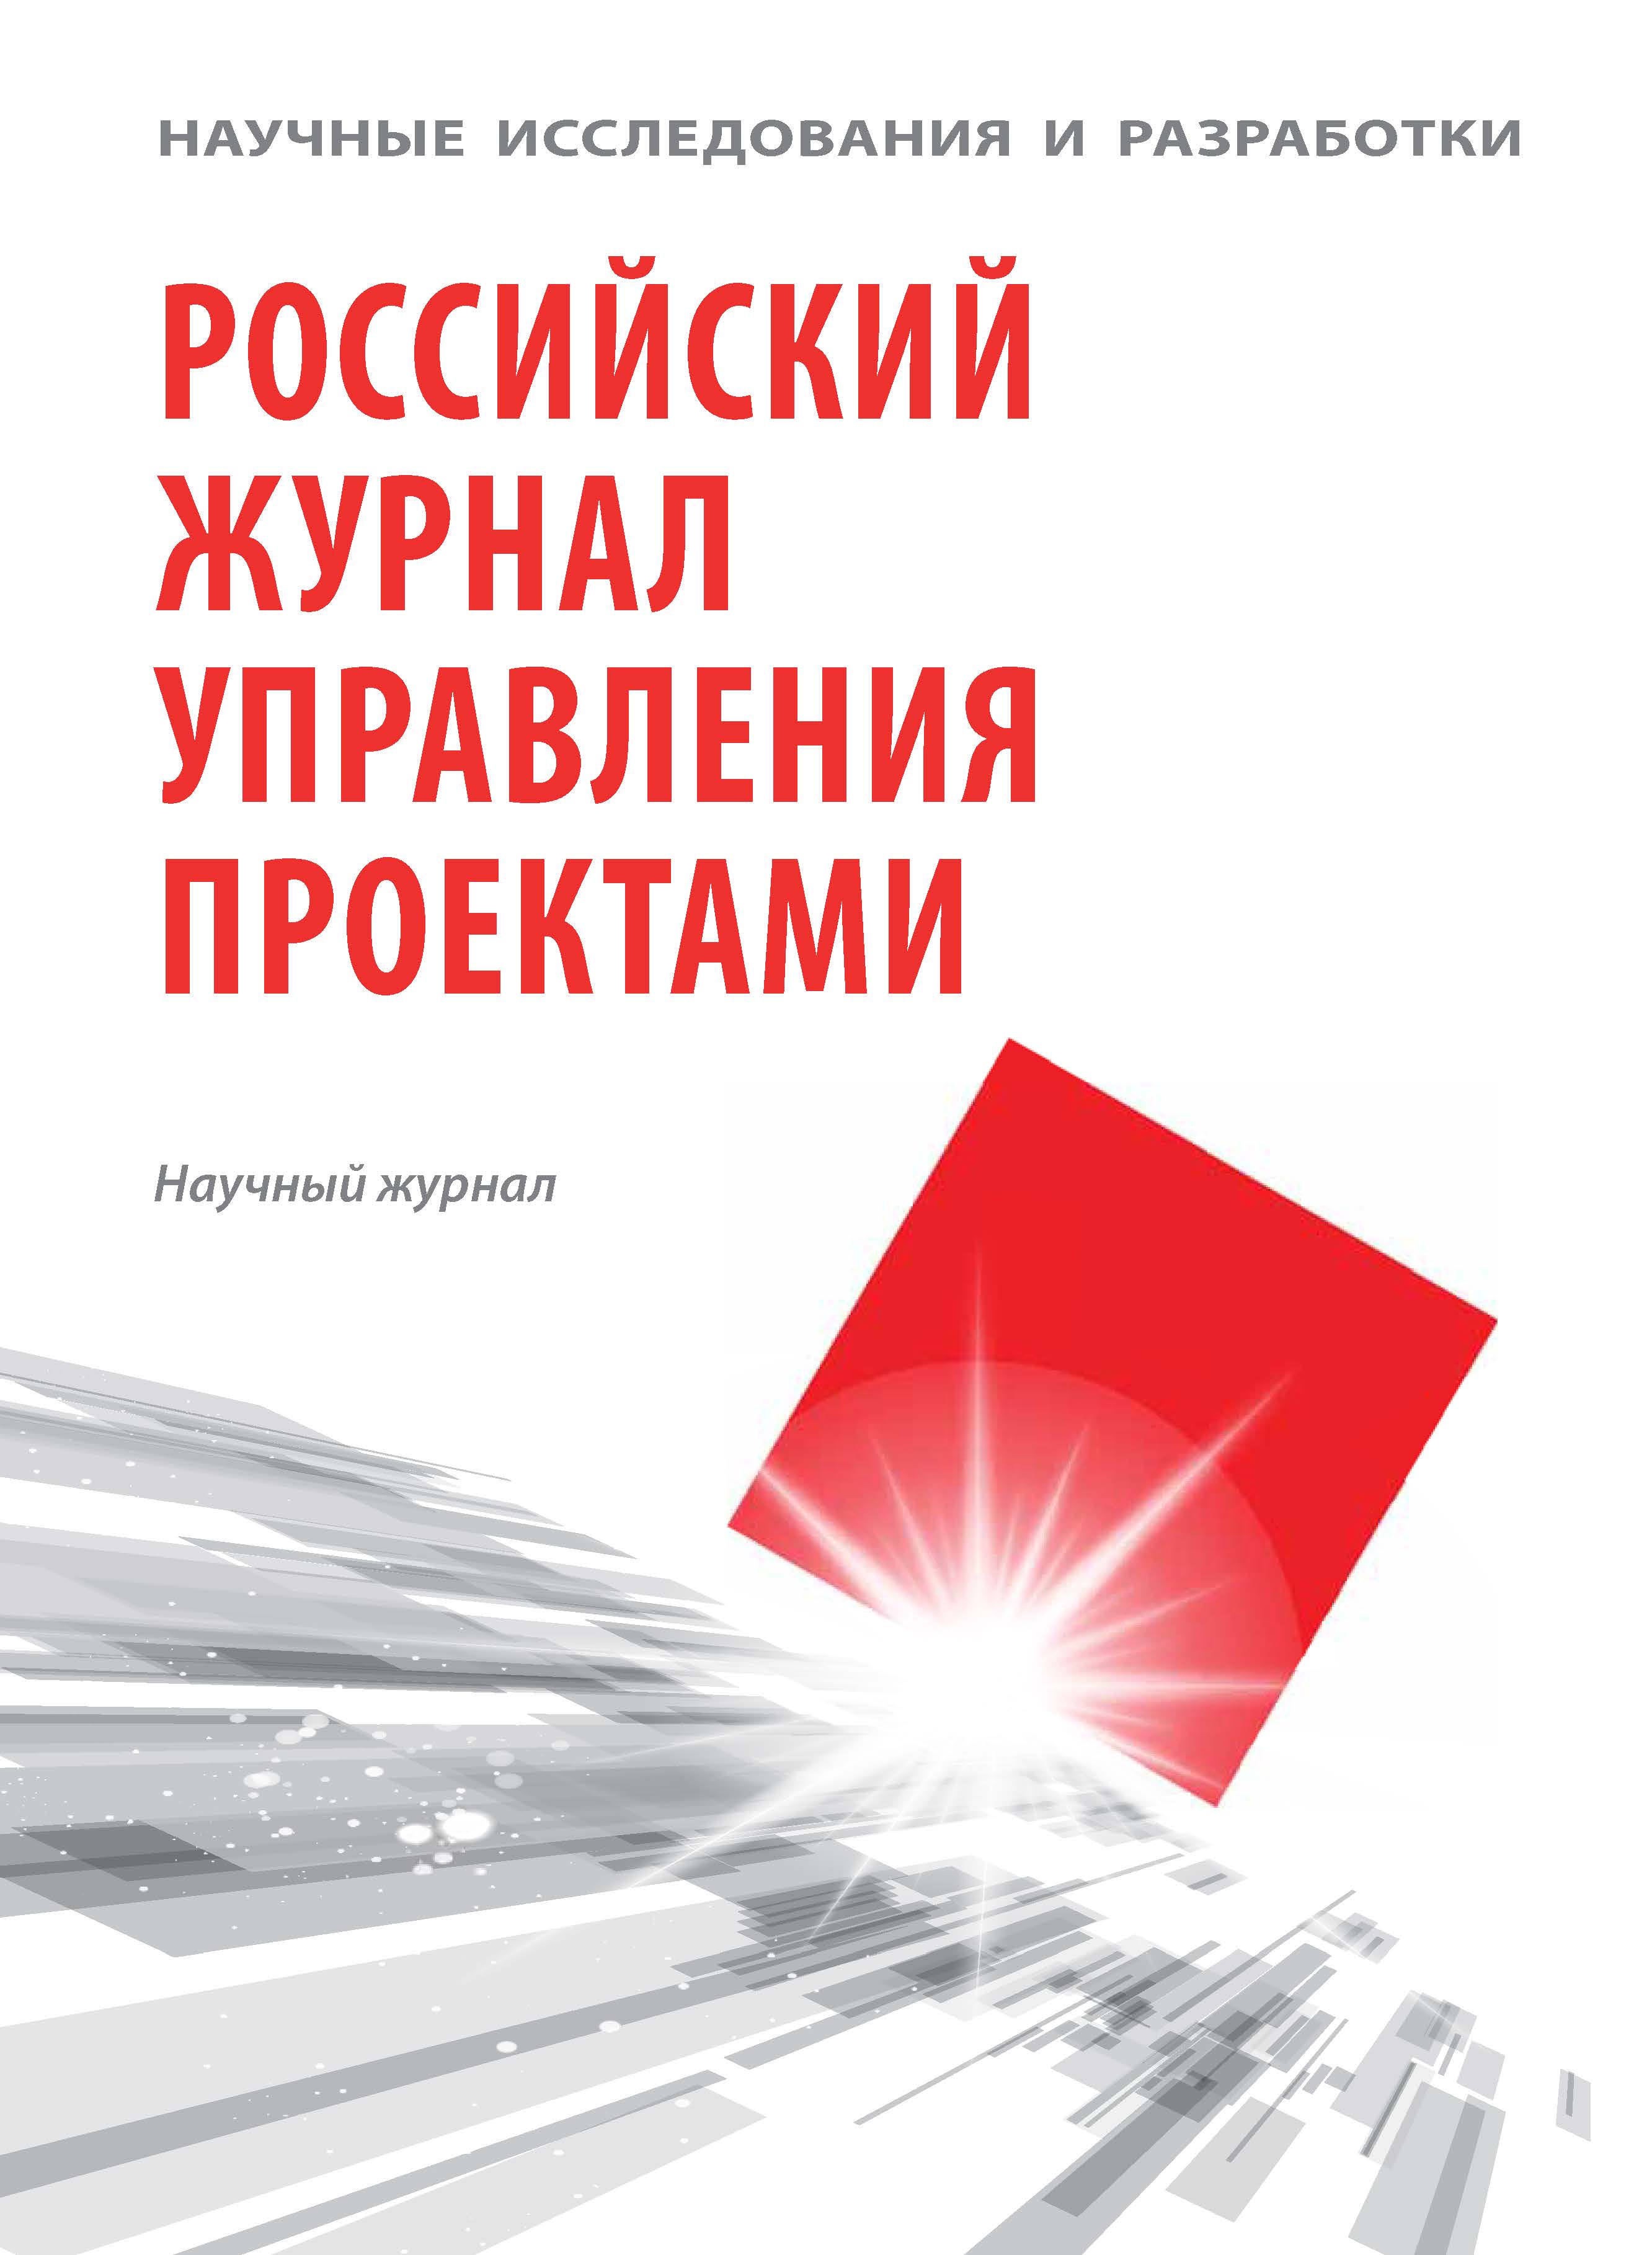             Научные исследования и разработки. Российский журнал управления проектами
    